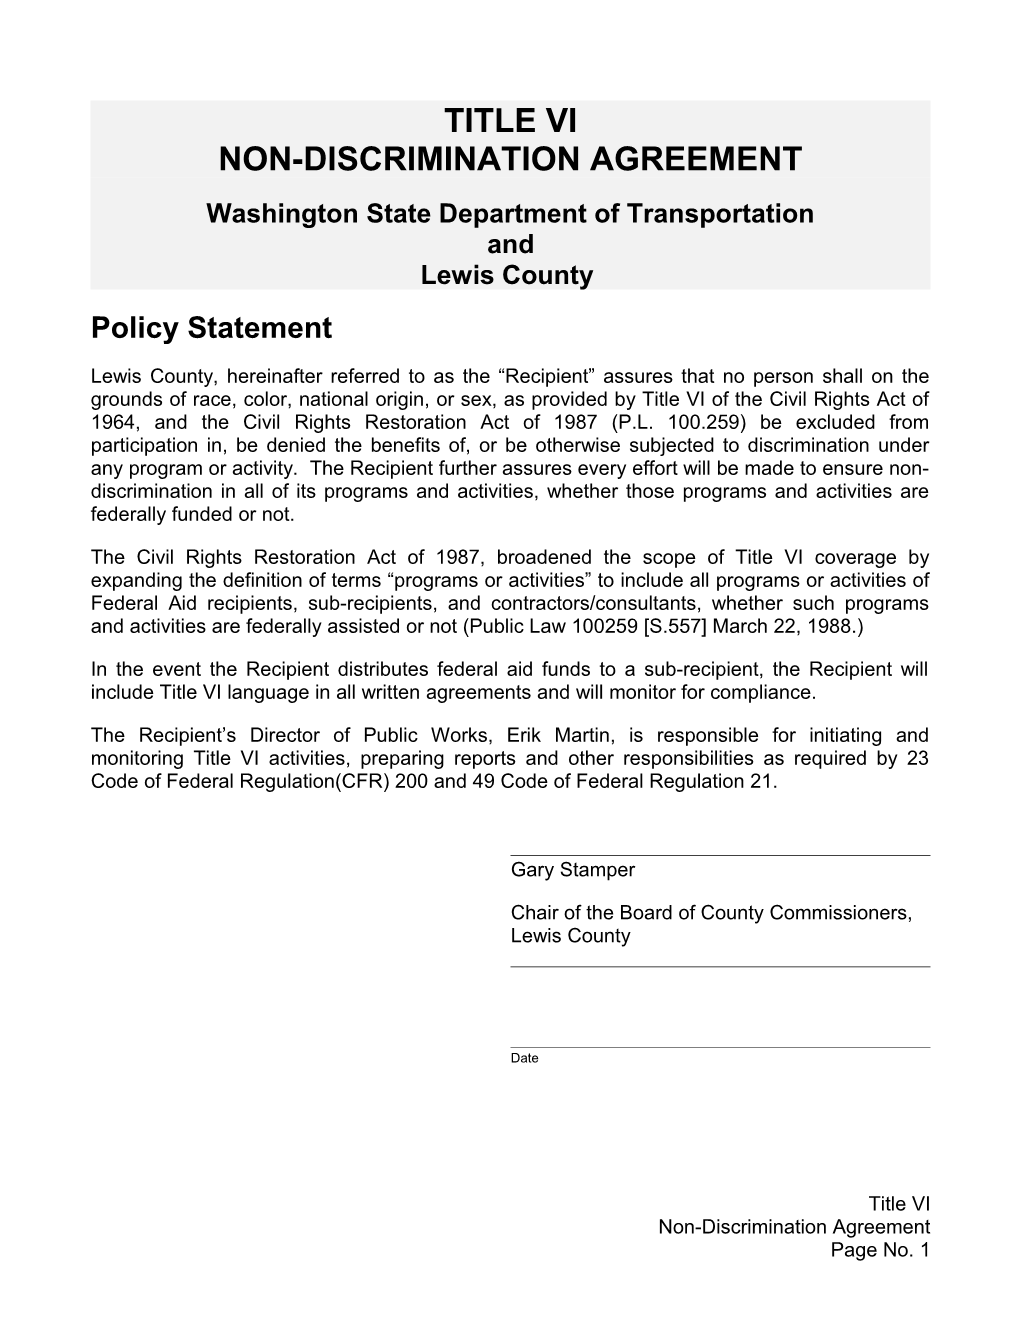 Title VI Non-Discrimination Agreement